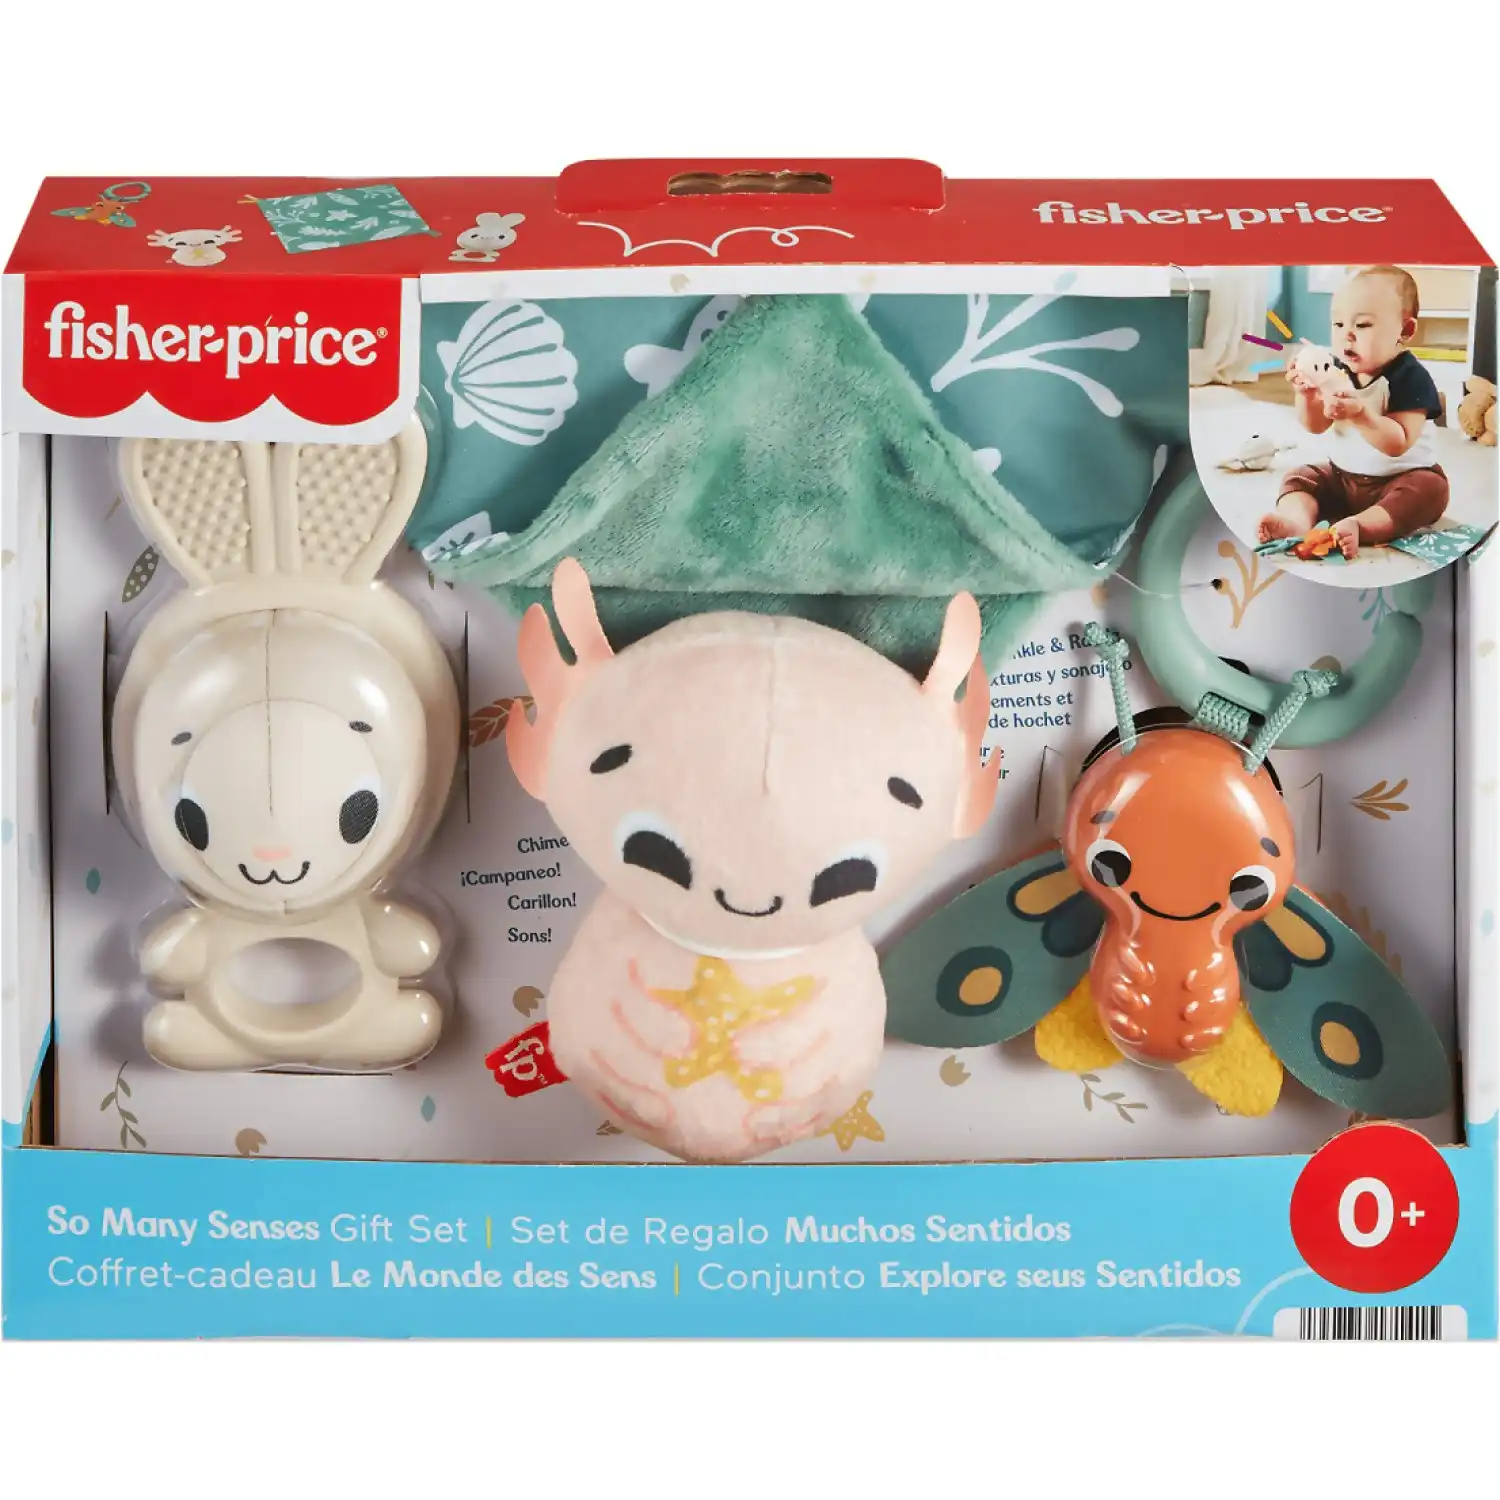 Fisher-price - So Many Senses Gift Set 4 Baby Sensory Toys